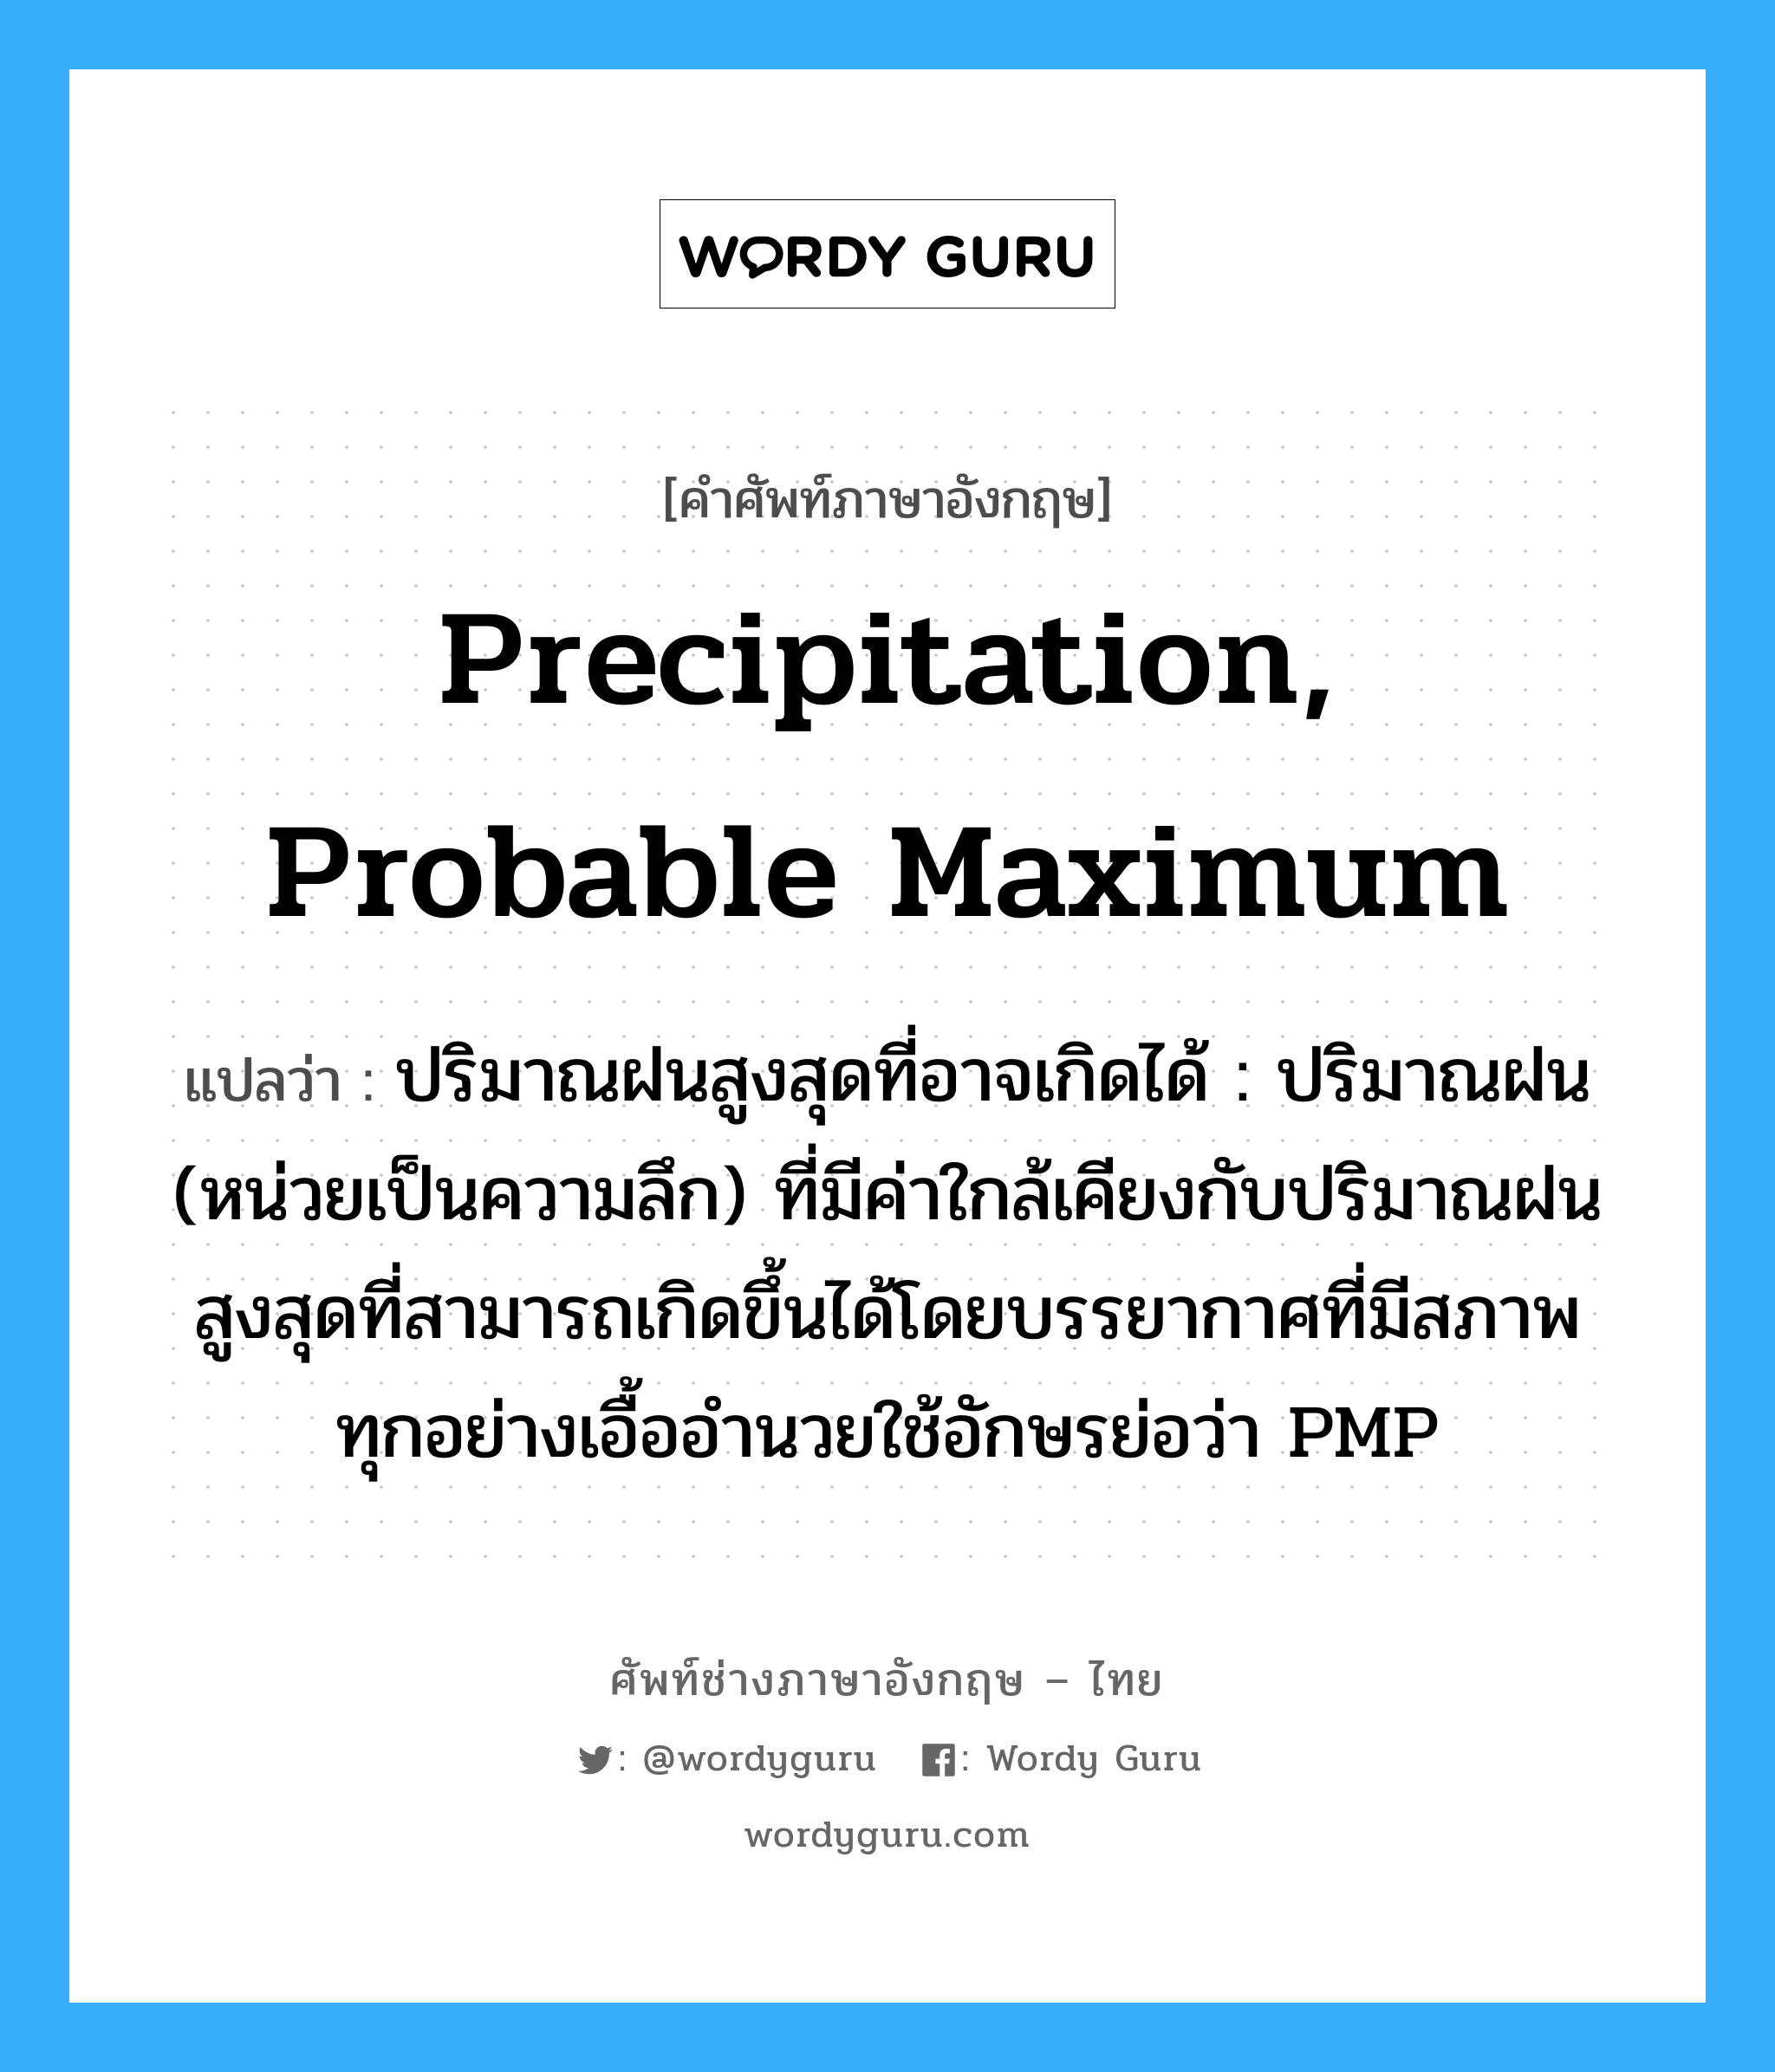 precipitation, probable maximum แปลว่า?, คำศัพท์ช่างภาษาอังกฤษ - ไทย precipitation, probable maximum คำศัพท์ภาษาอังกฤษ precipitation, probable maximum แปลว่า ปริมาณฝนสูงสุดที่อาจเกิดได้ : ปริมาณฝน (หน่วยเป็นความลึก) ที่มีค่าใกล้เคียงกับปริมาณฝนสูงสุดที่สามารถเกิดขึ้นได้โดยบรรยากาศที่มีสภาพทุกอย่างเอื้ออำนวยใช้อักษรย่อว่า PMP